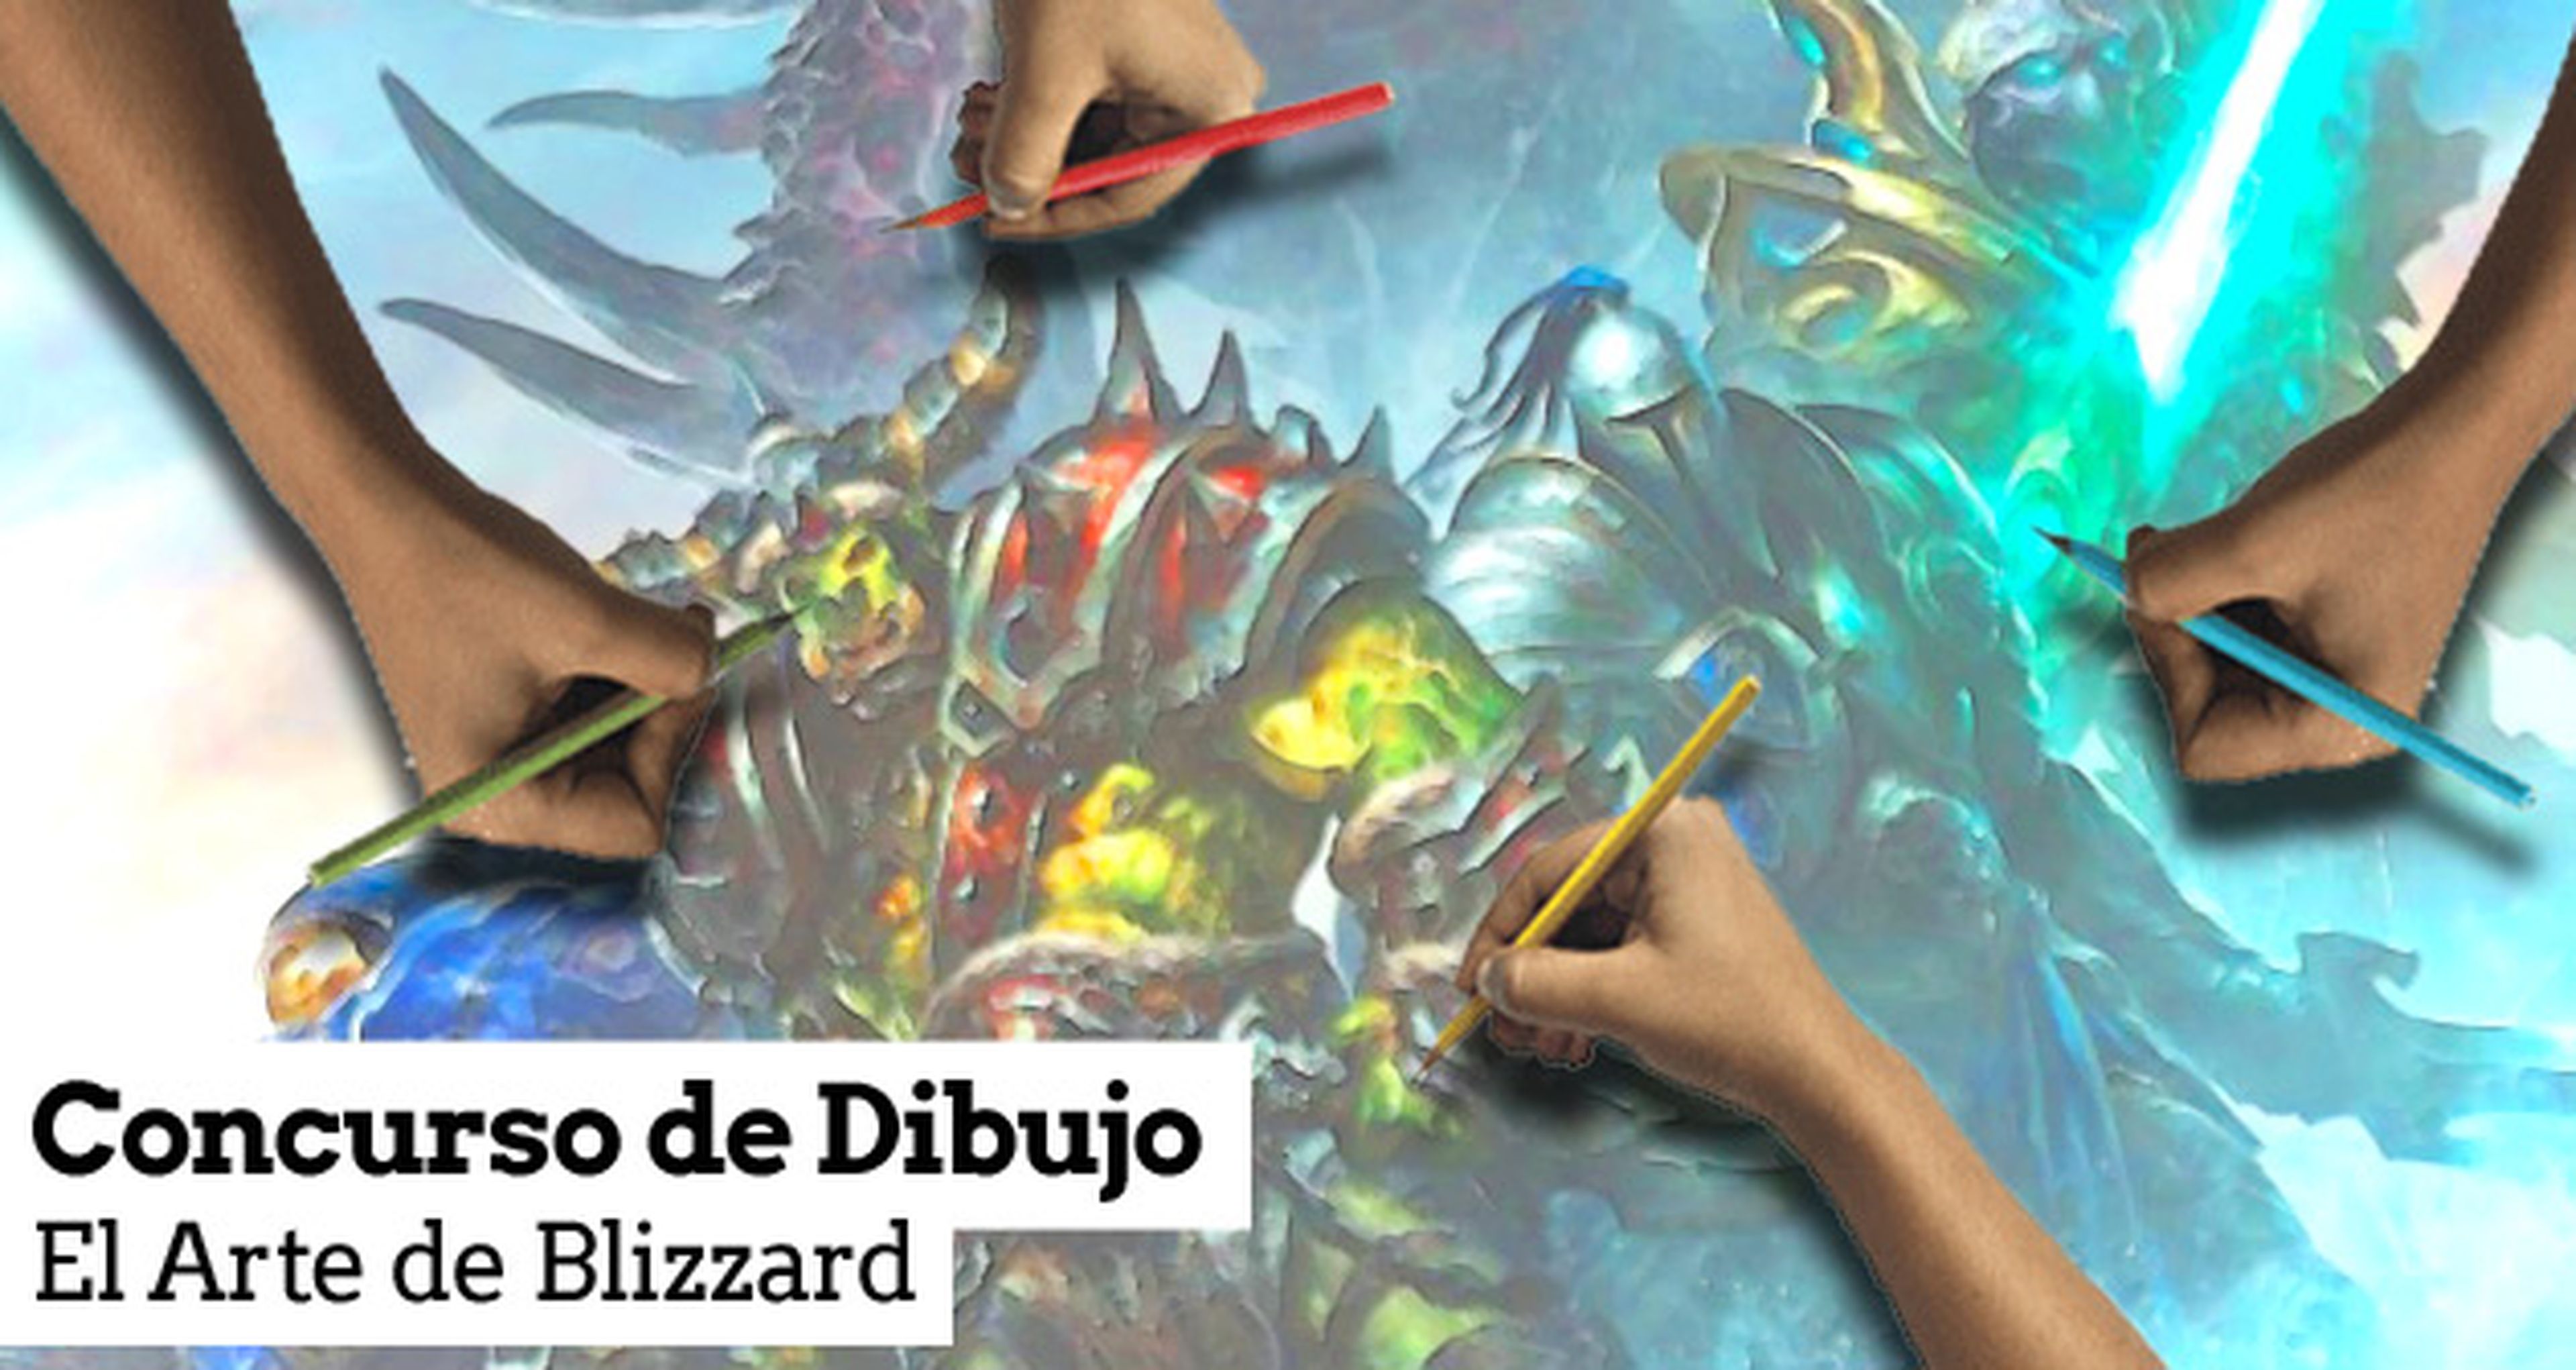 Concurso de dibujo The Art of Blizzard